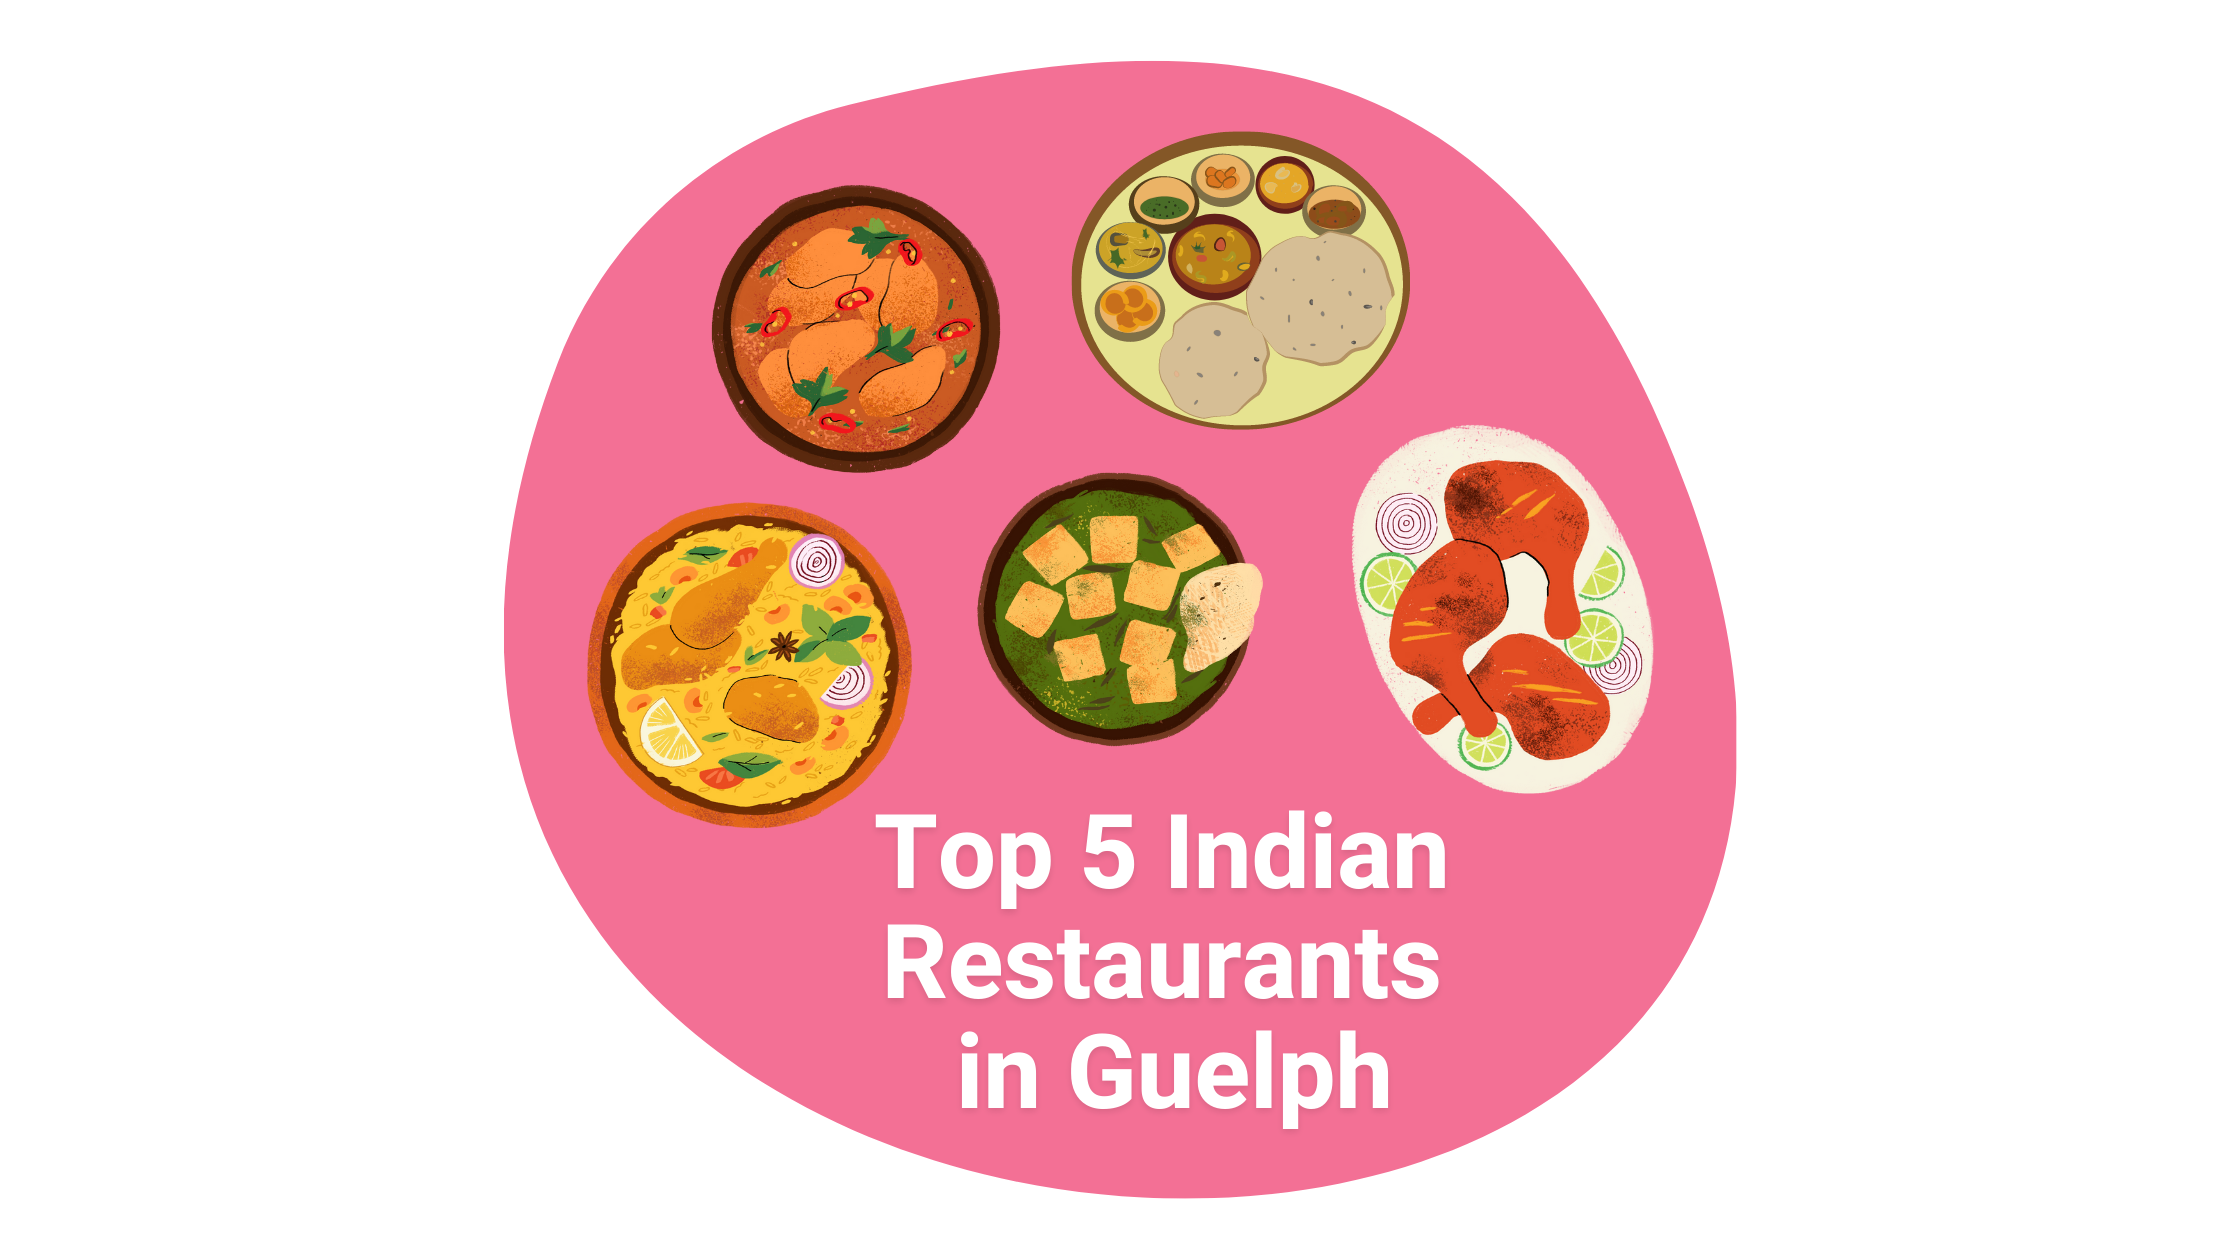 Top 5 Indian Restaurants in Guelph